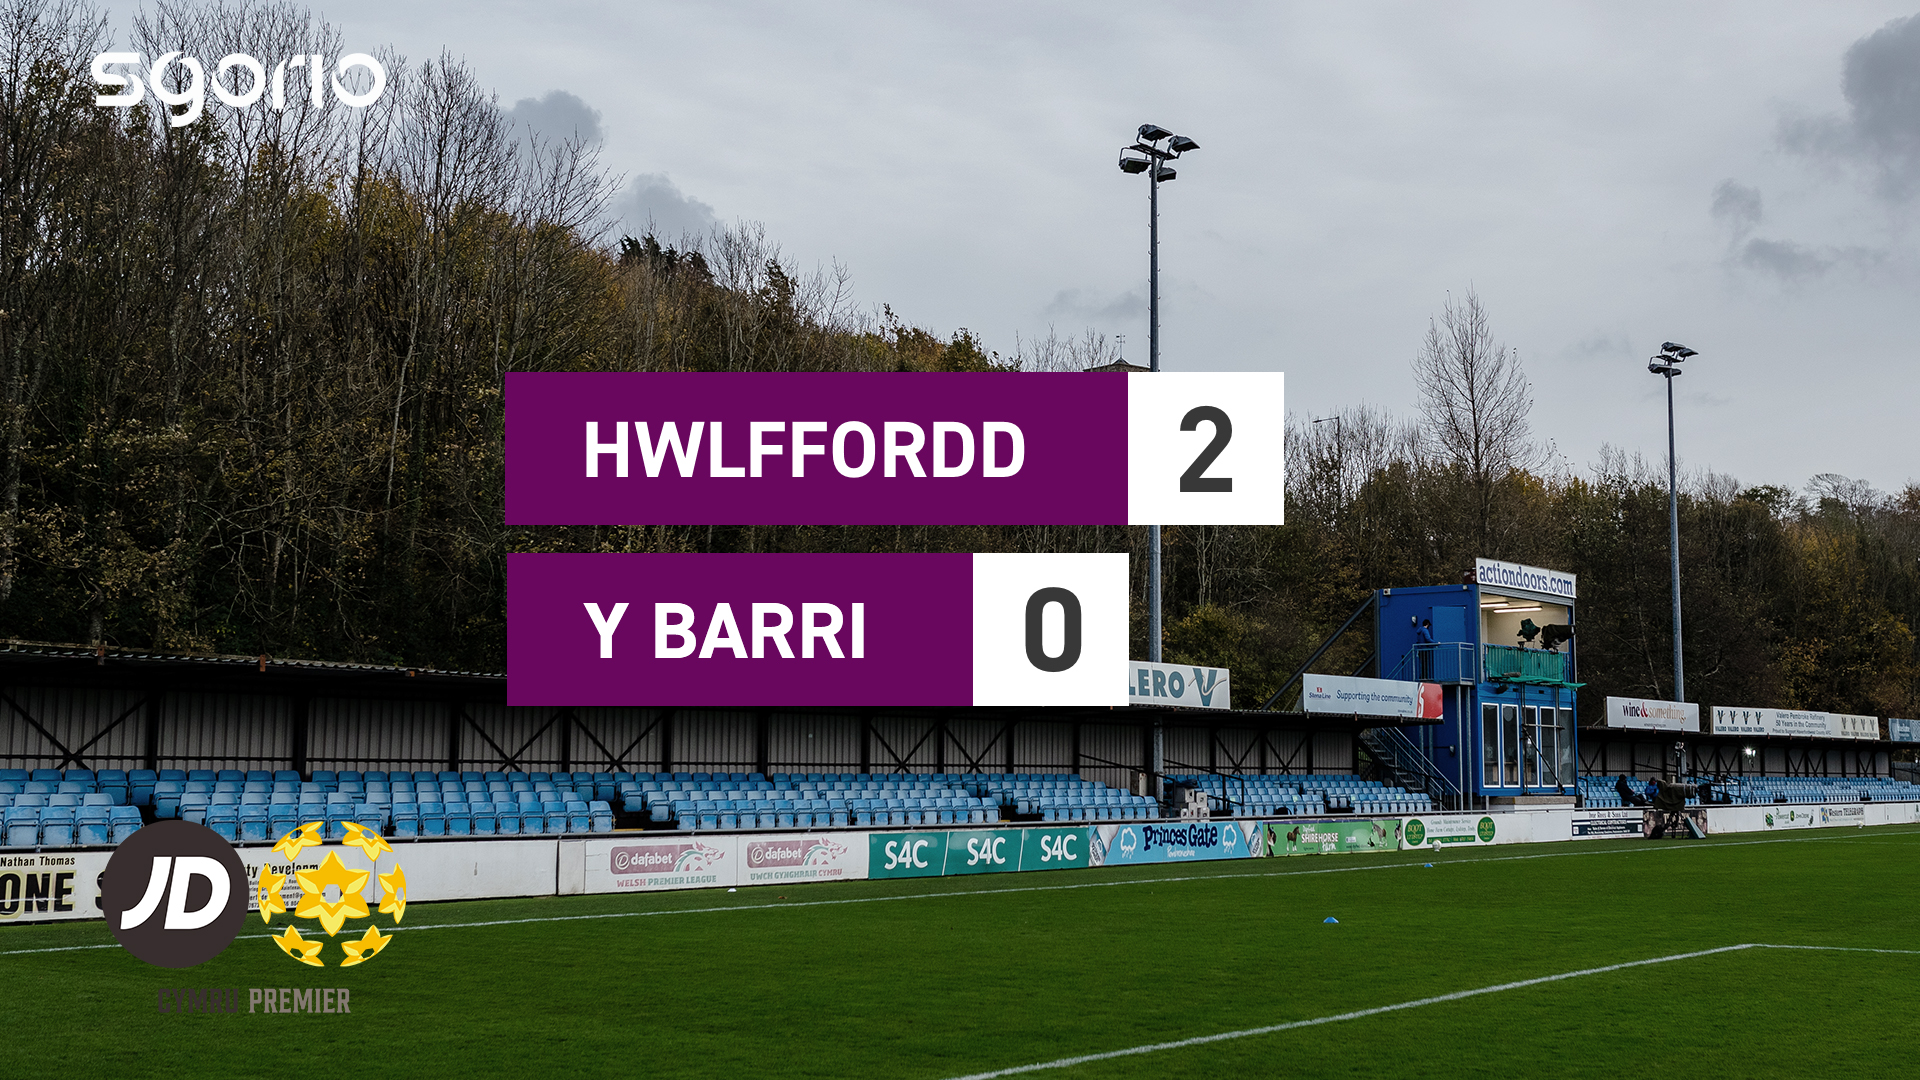 Hwlffordd 2-0 Y Barri